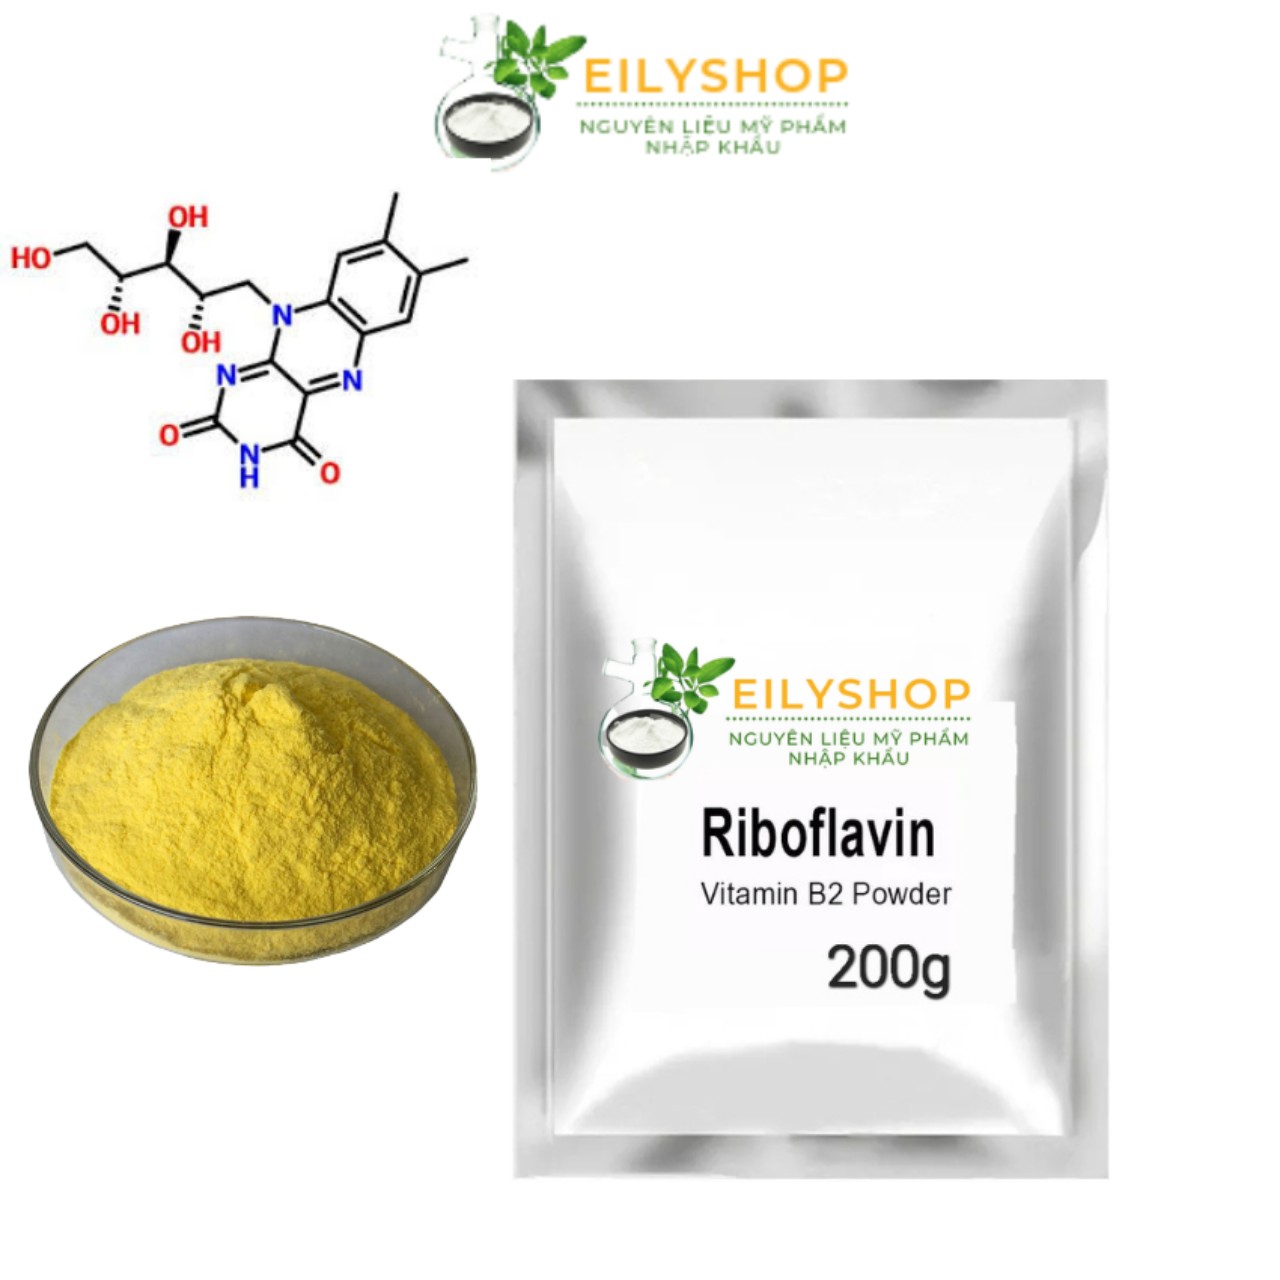 Bột Vitamin B2 (Riboflavin) - Bột siêu mịn làm đẹp, Nguyên liệu Dược - Mỹ Phẩm - nguyên liệu mỹ phẩm Nhập Khẩu - Eilyshop